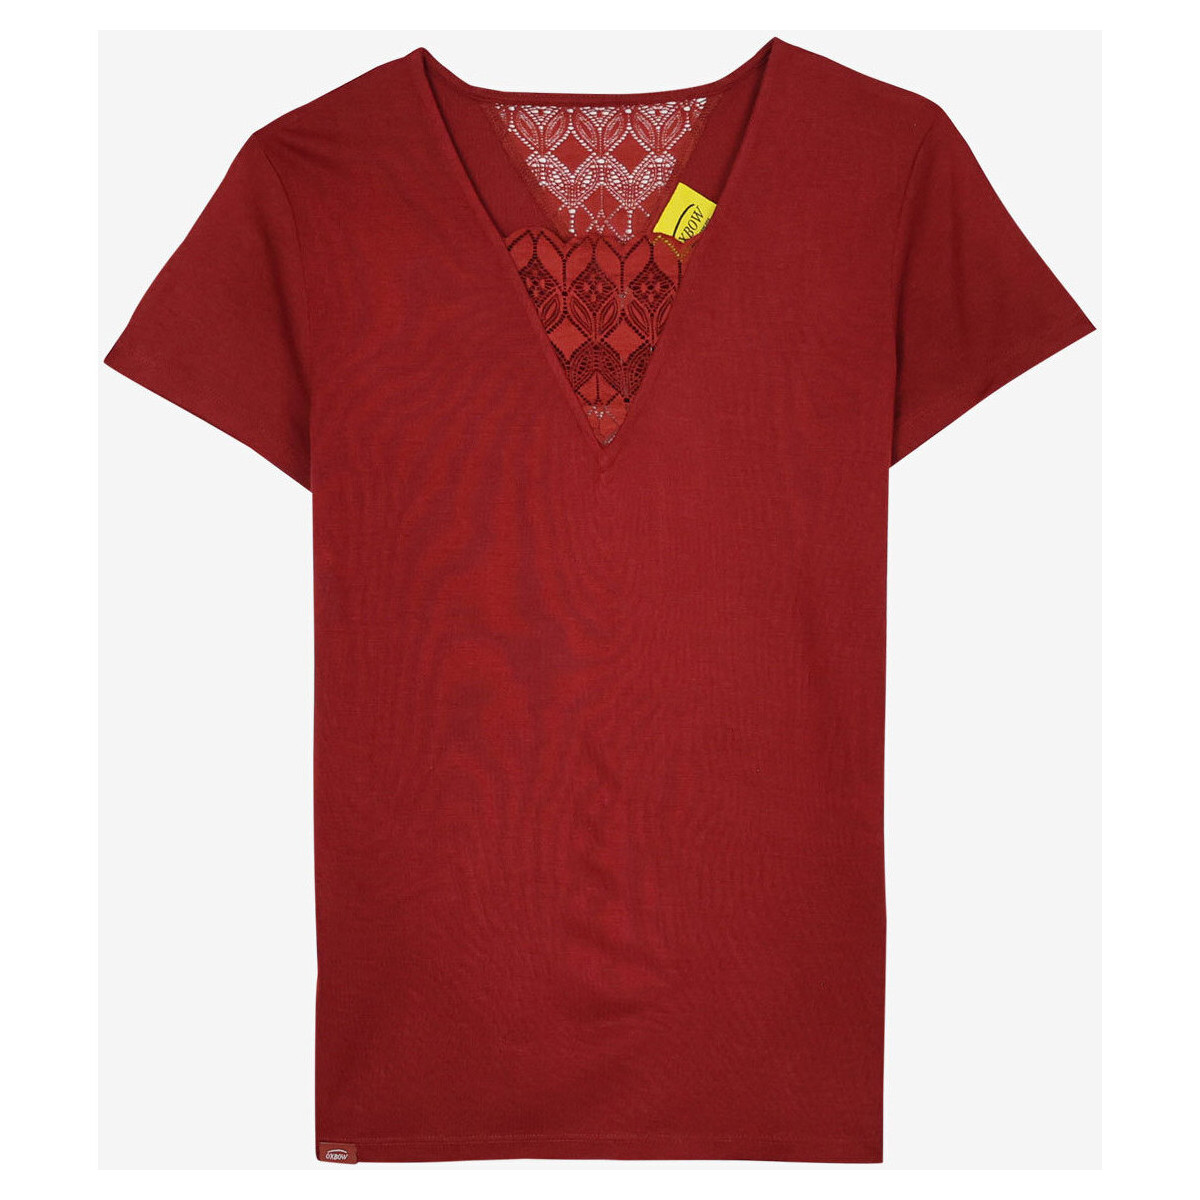 Vêtements Femme T-shirts manches courtes Oxbow Top fluide empiècement dentelle P2TIA Rouge